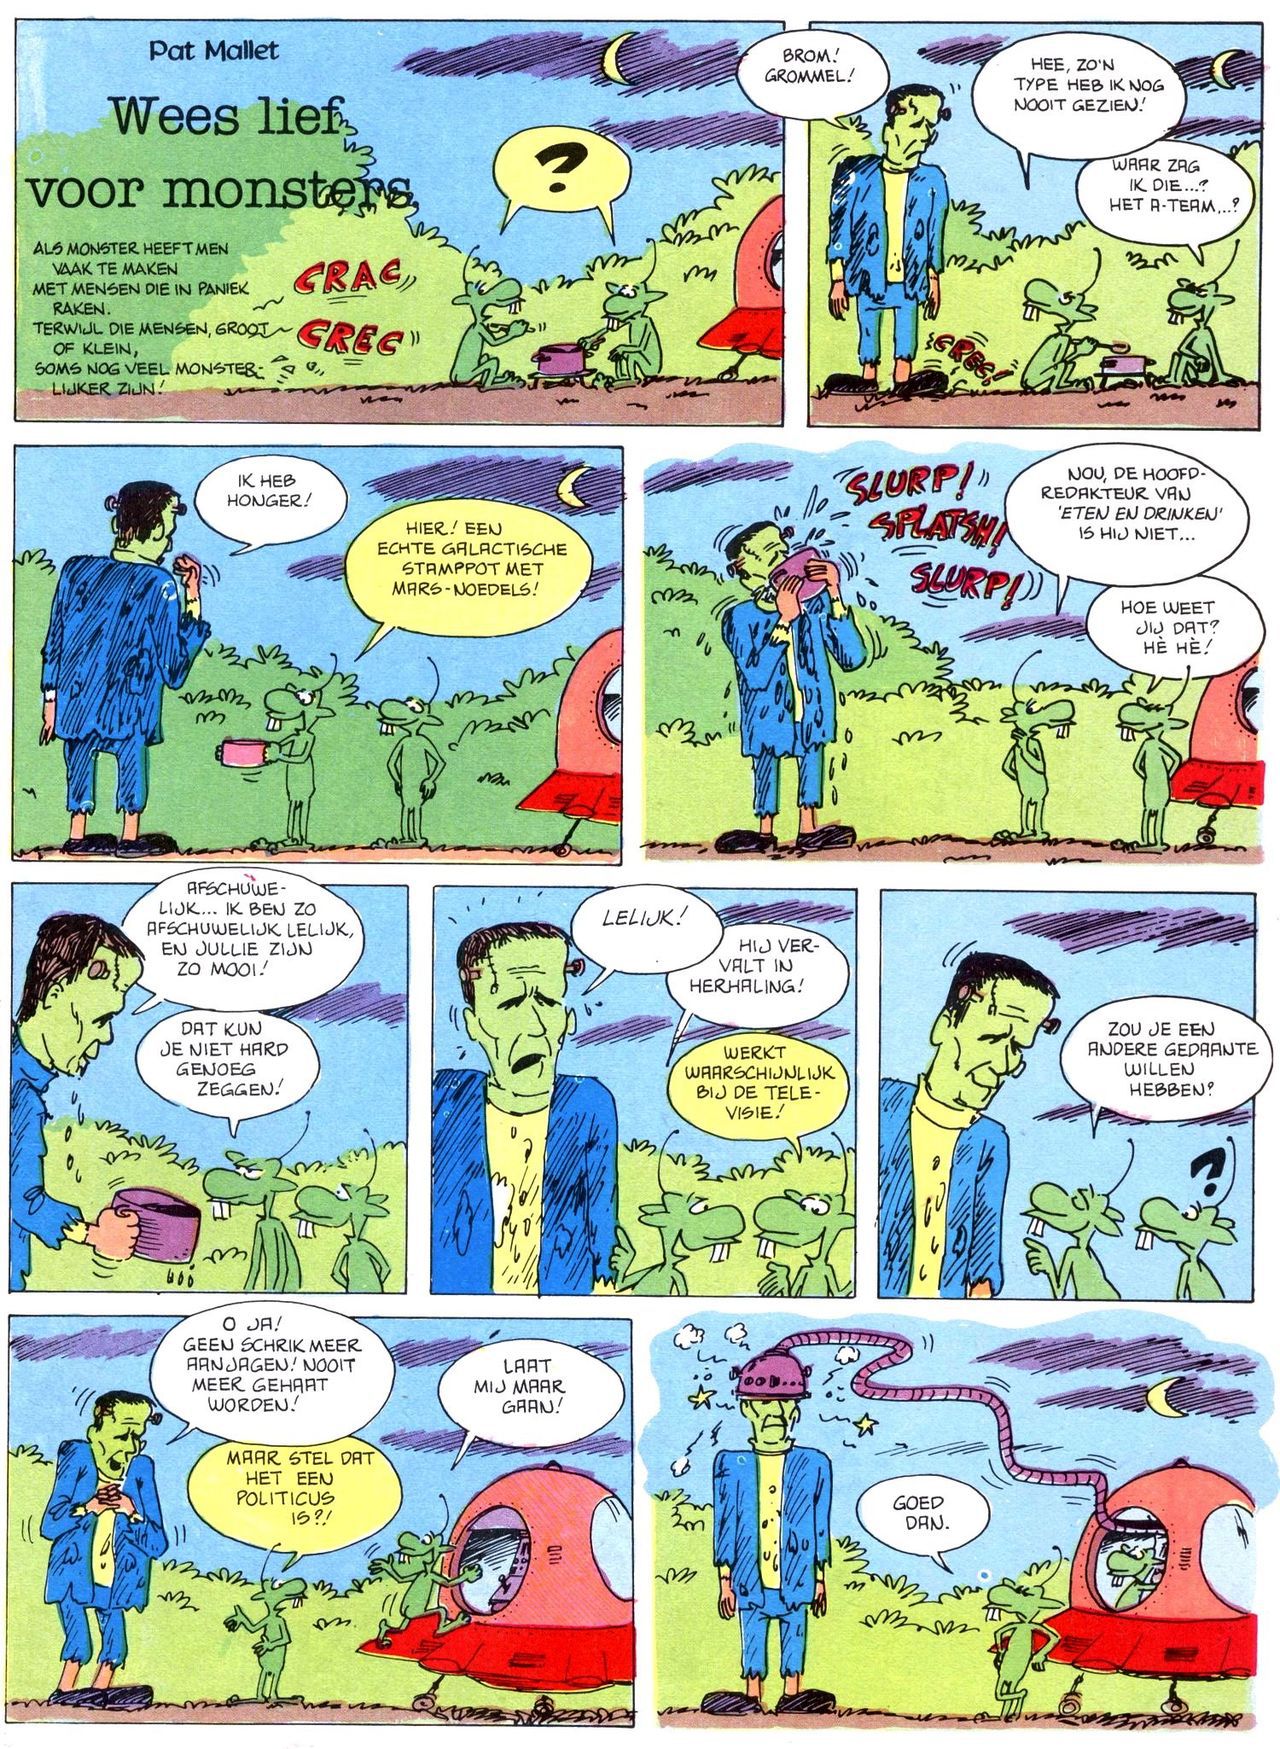 Het Is Groen En Het.. - 02 - Verboden Op Het Gras Te Lopen (Dutch) Een oude humoristische serie van Pat Mallet 41